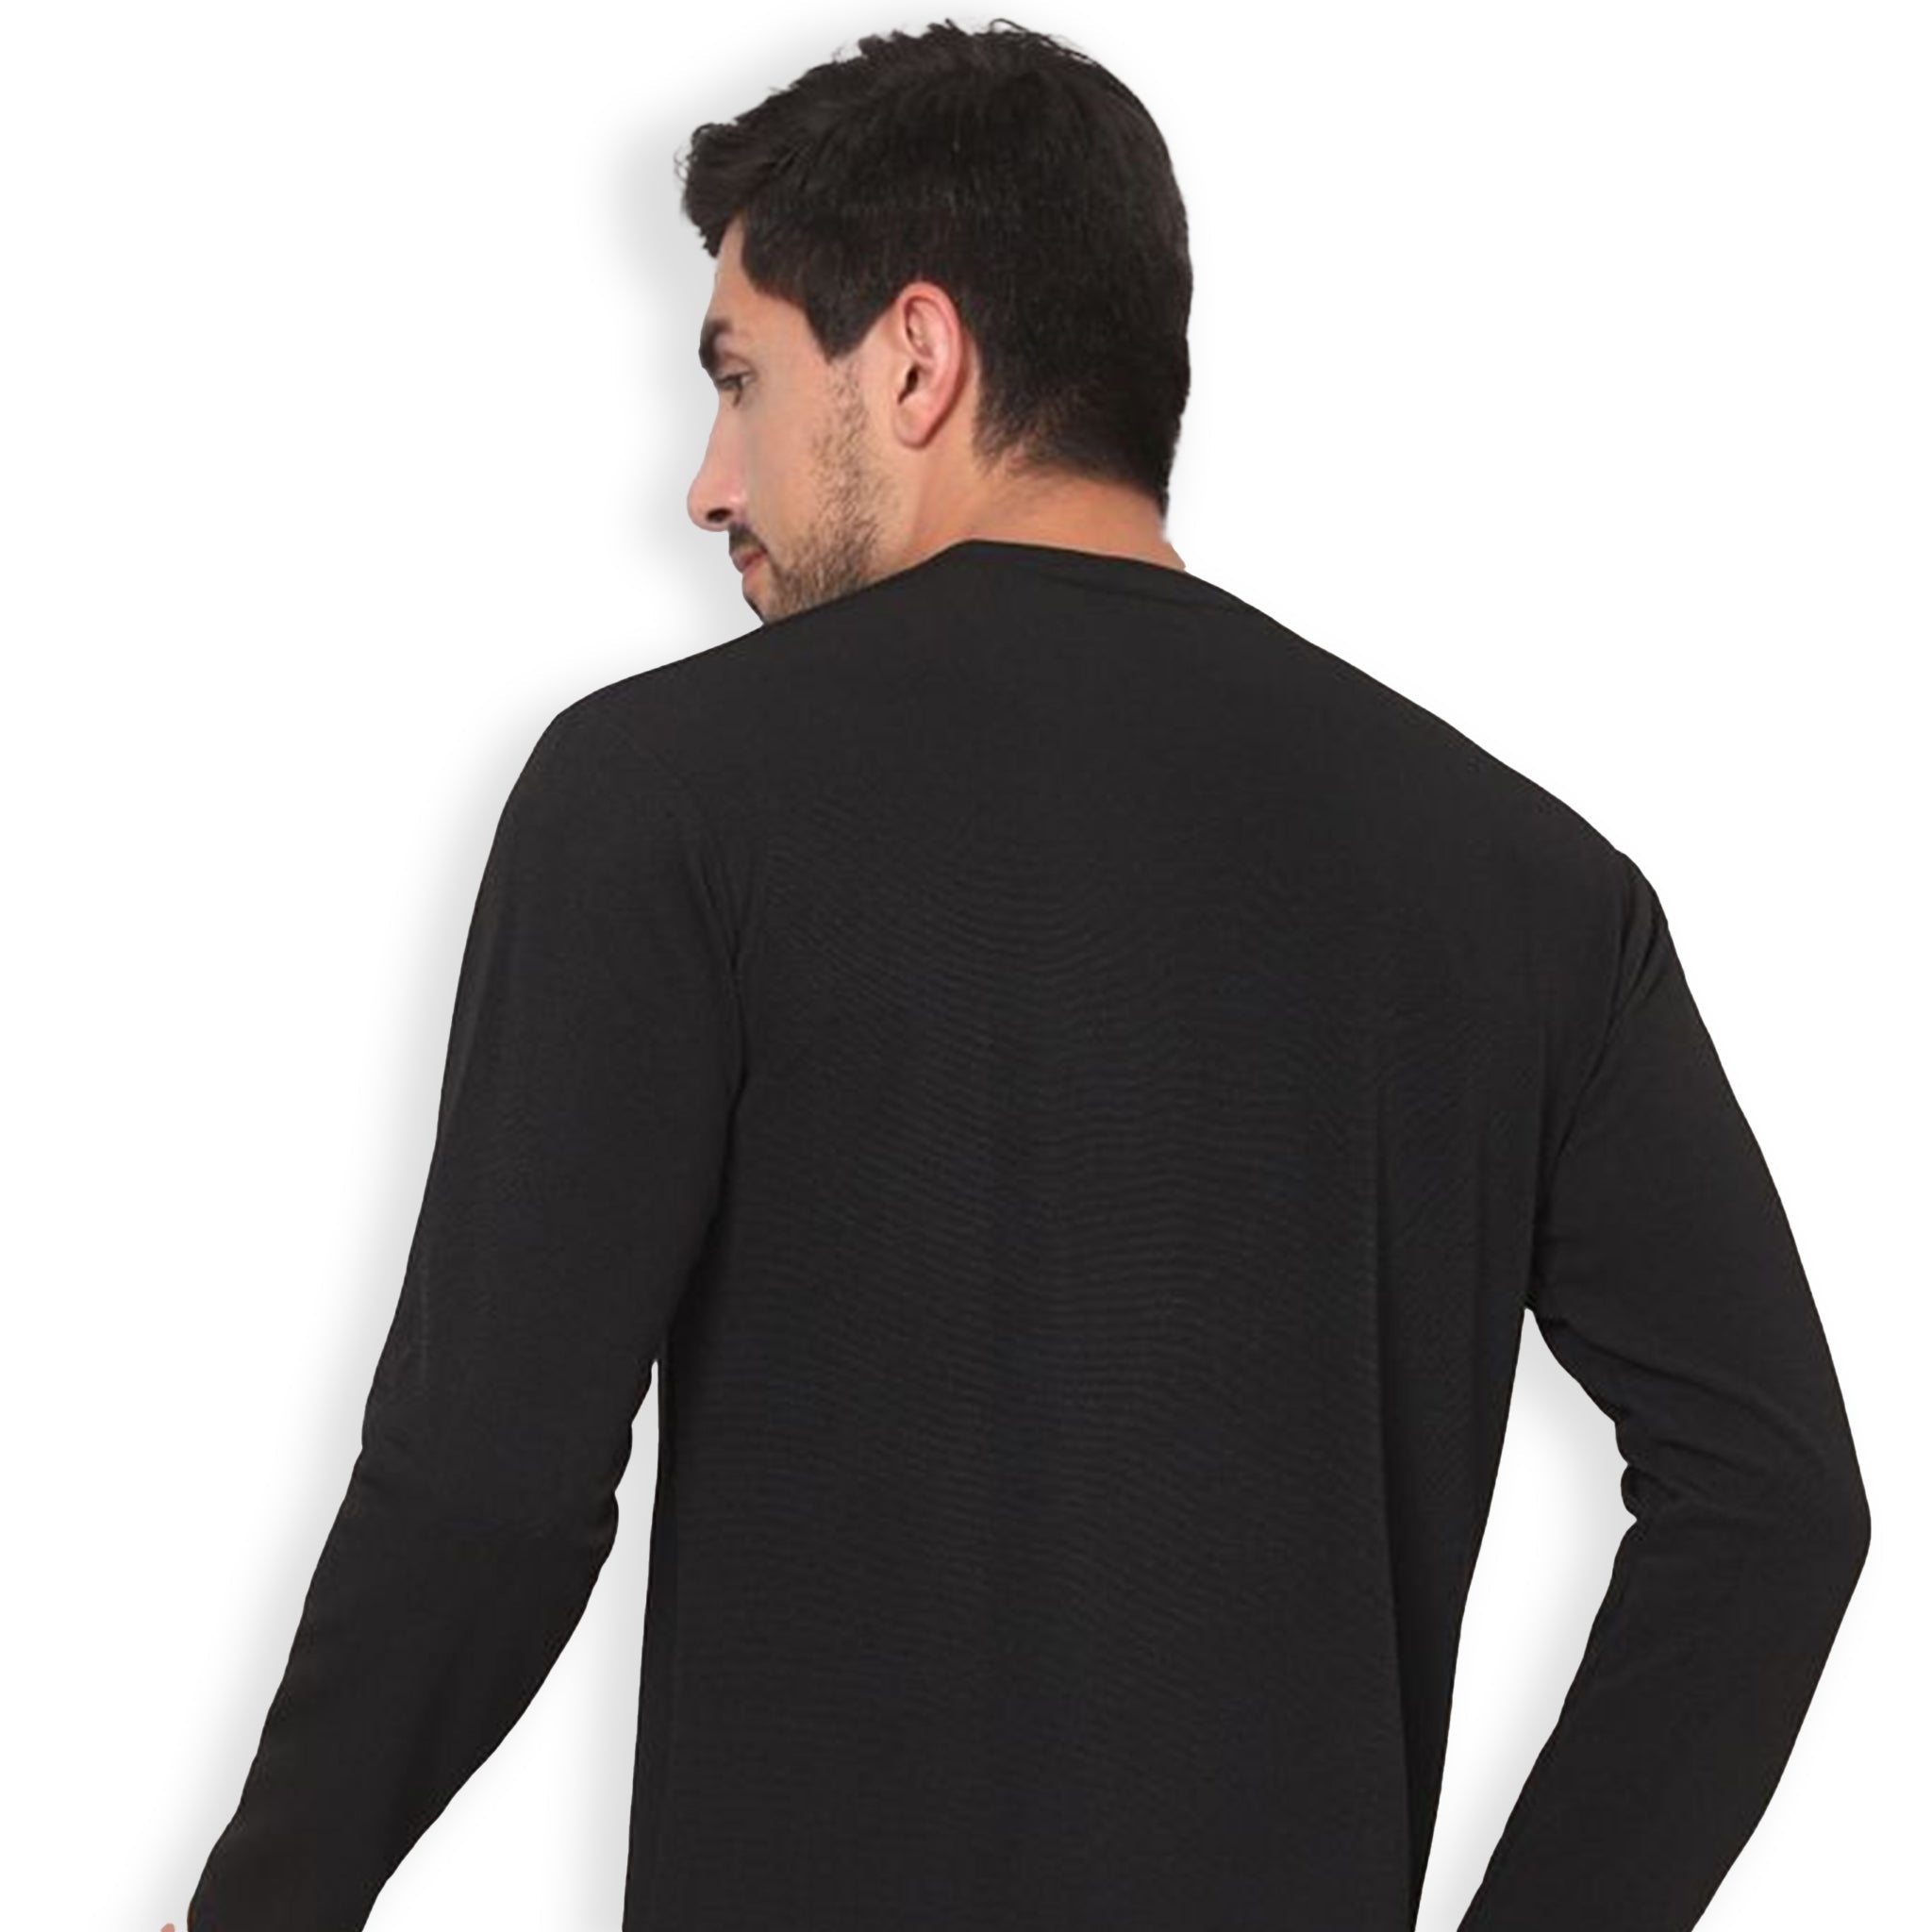 Bizzar's Black Full Sleeve T-Shirt